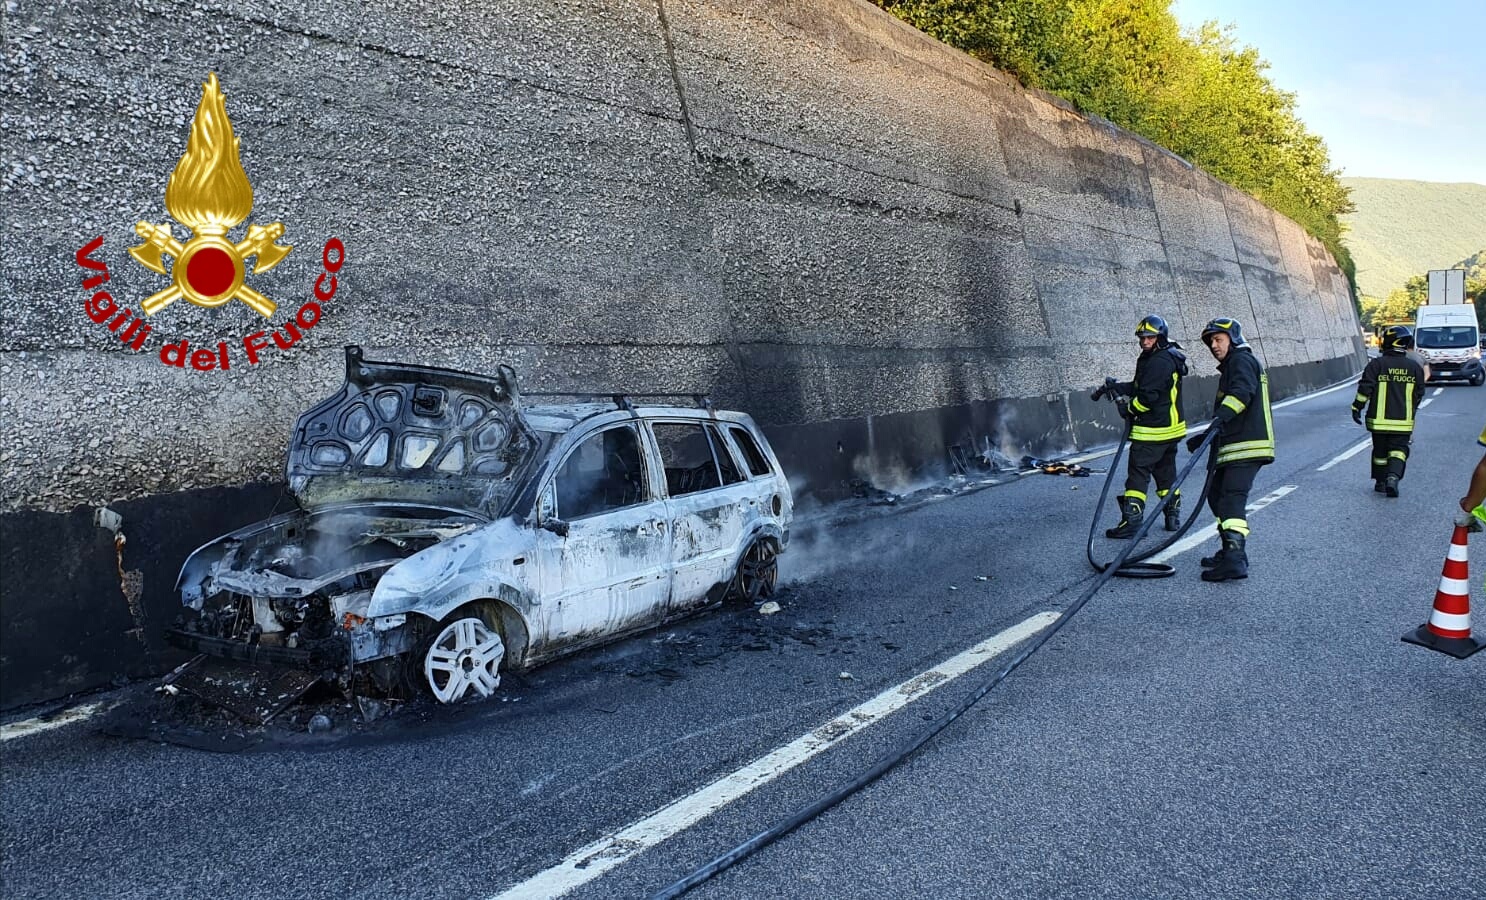 Monteforte Irpino| Auto in fiamme sull’autostrada, paura per 48enne